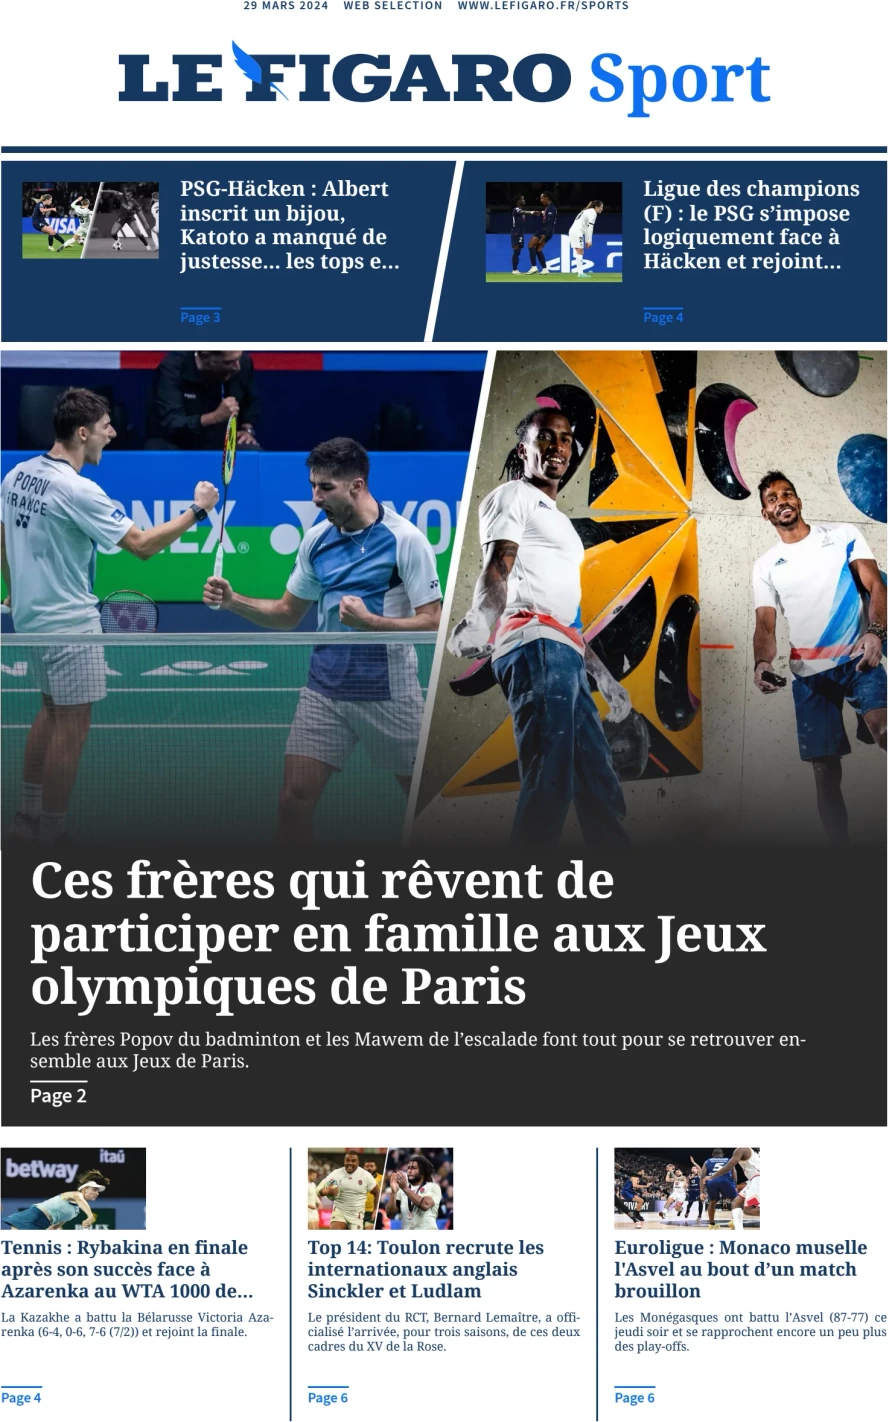 prima pagina - Le Figaro SPORT del 29/03/2024